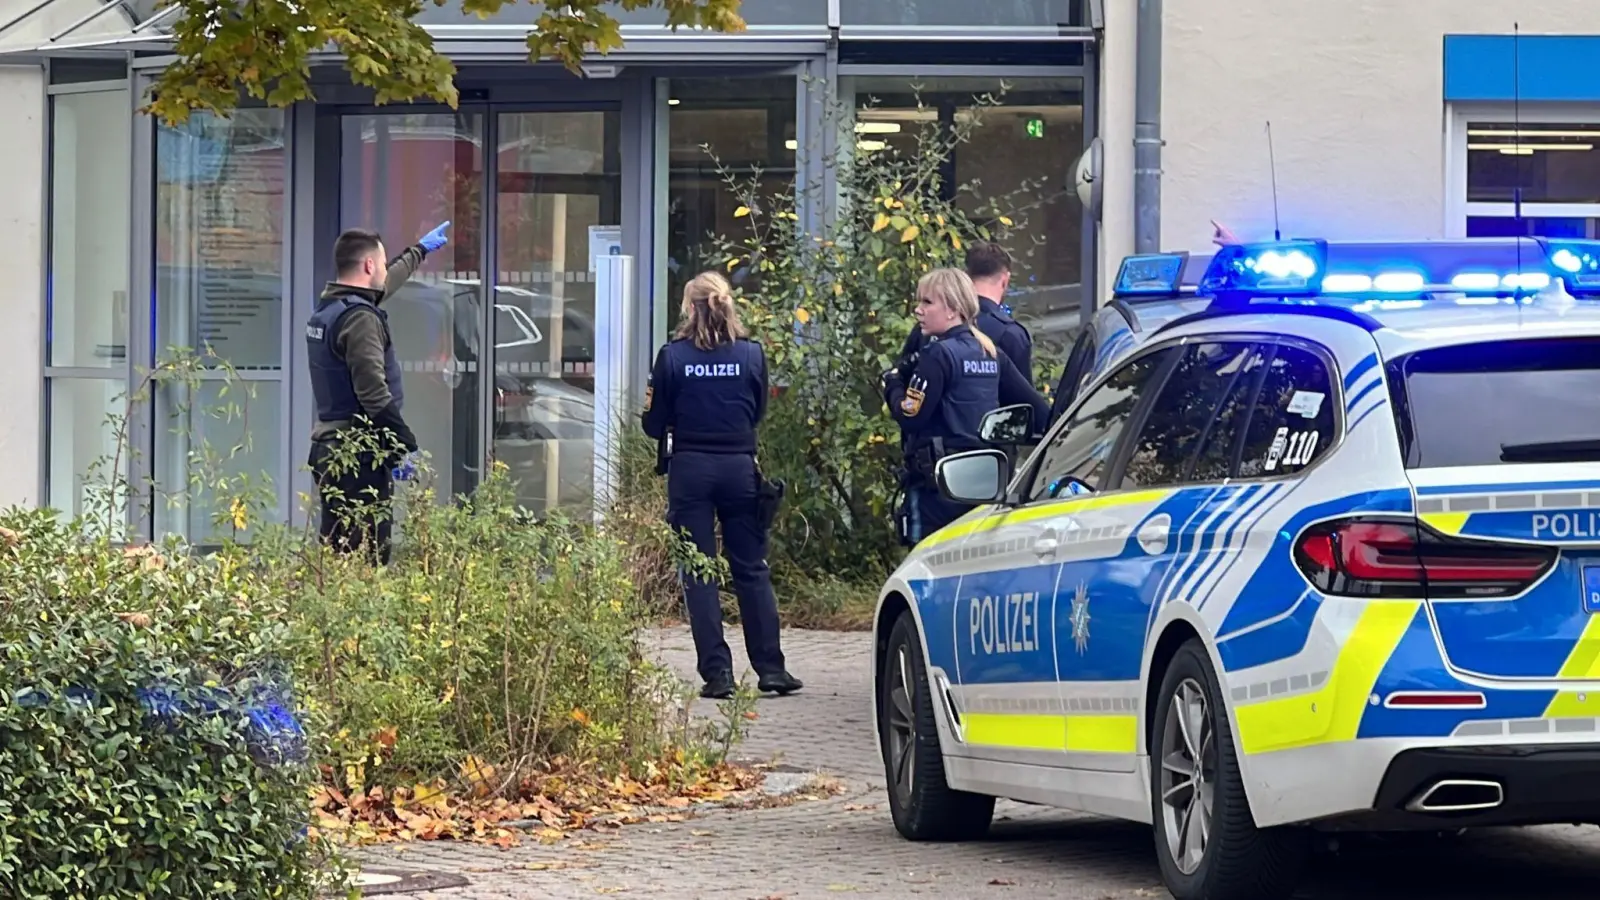 Polizisten stehen vor der kinder- und jugendpsychiatrischen Einrichtung in Regensburg. Viele Fragen zu dem Angriff sind noch offen. (Foto: André Baumgarten/Mediengruppe Bayern /dpa)